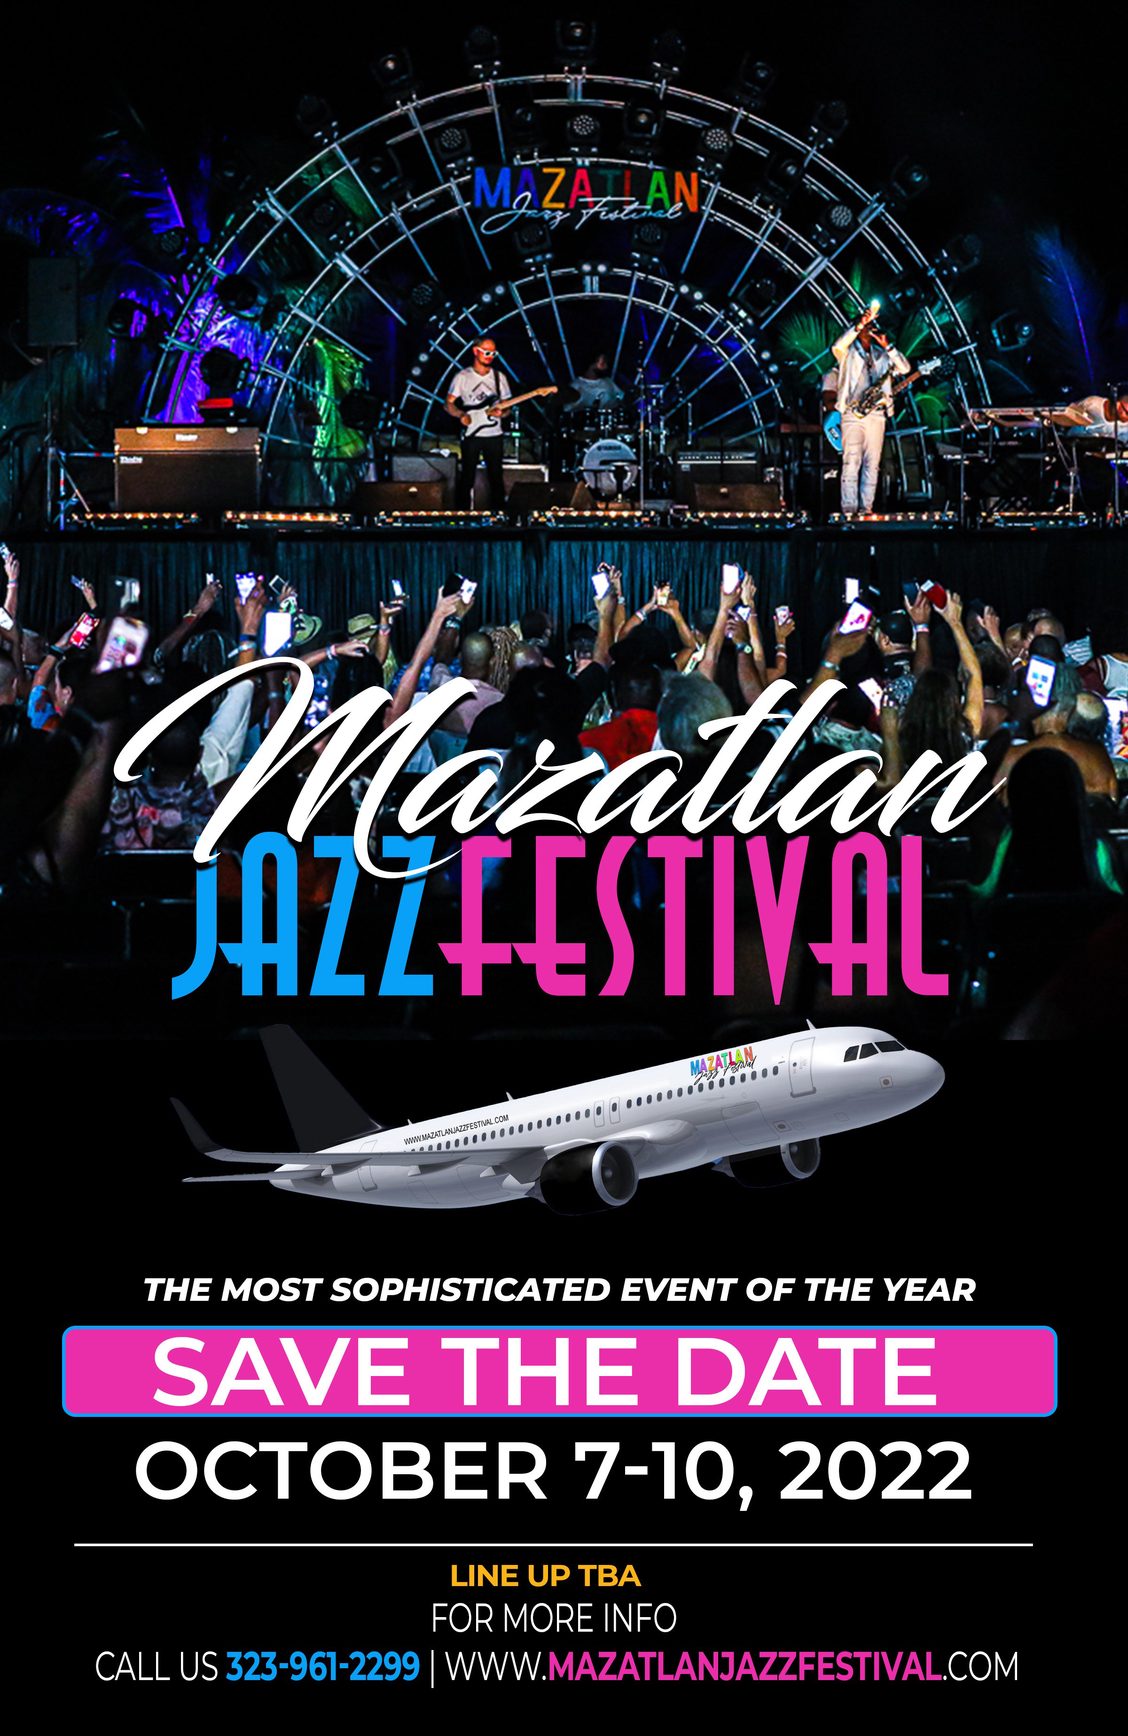 Mazatlan Jazz Festival 2022 full